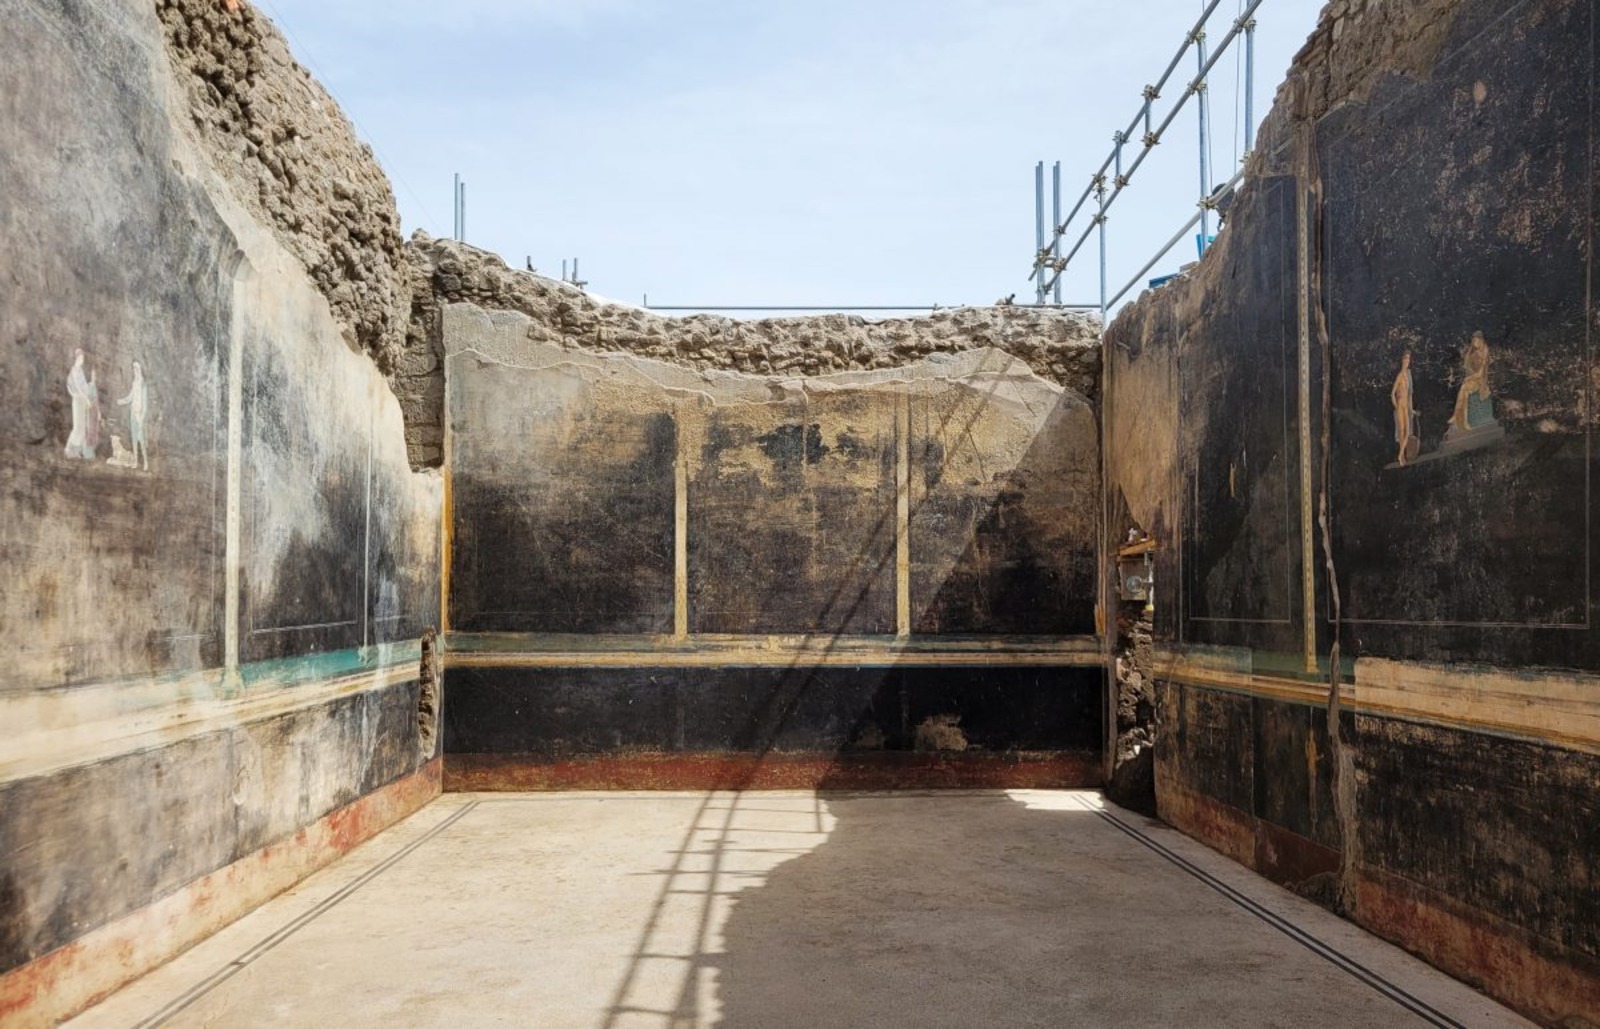 La salle de banquet dans laquelle les nouvelles fresques ont été découvertes est composée de murs noirs, mettant en exergue les représentations. © Parc archéologique de Pompéi